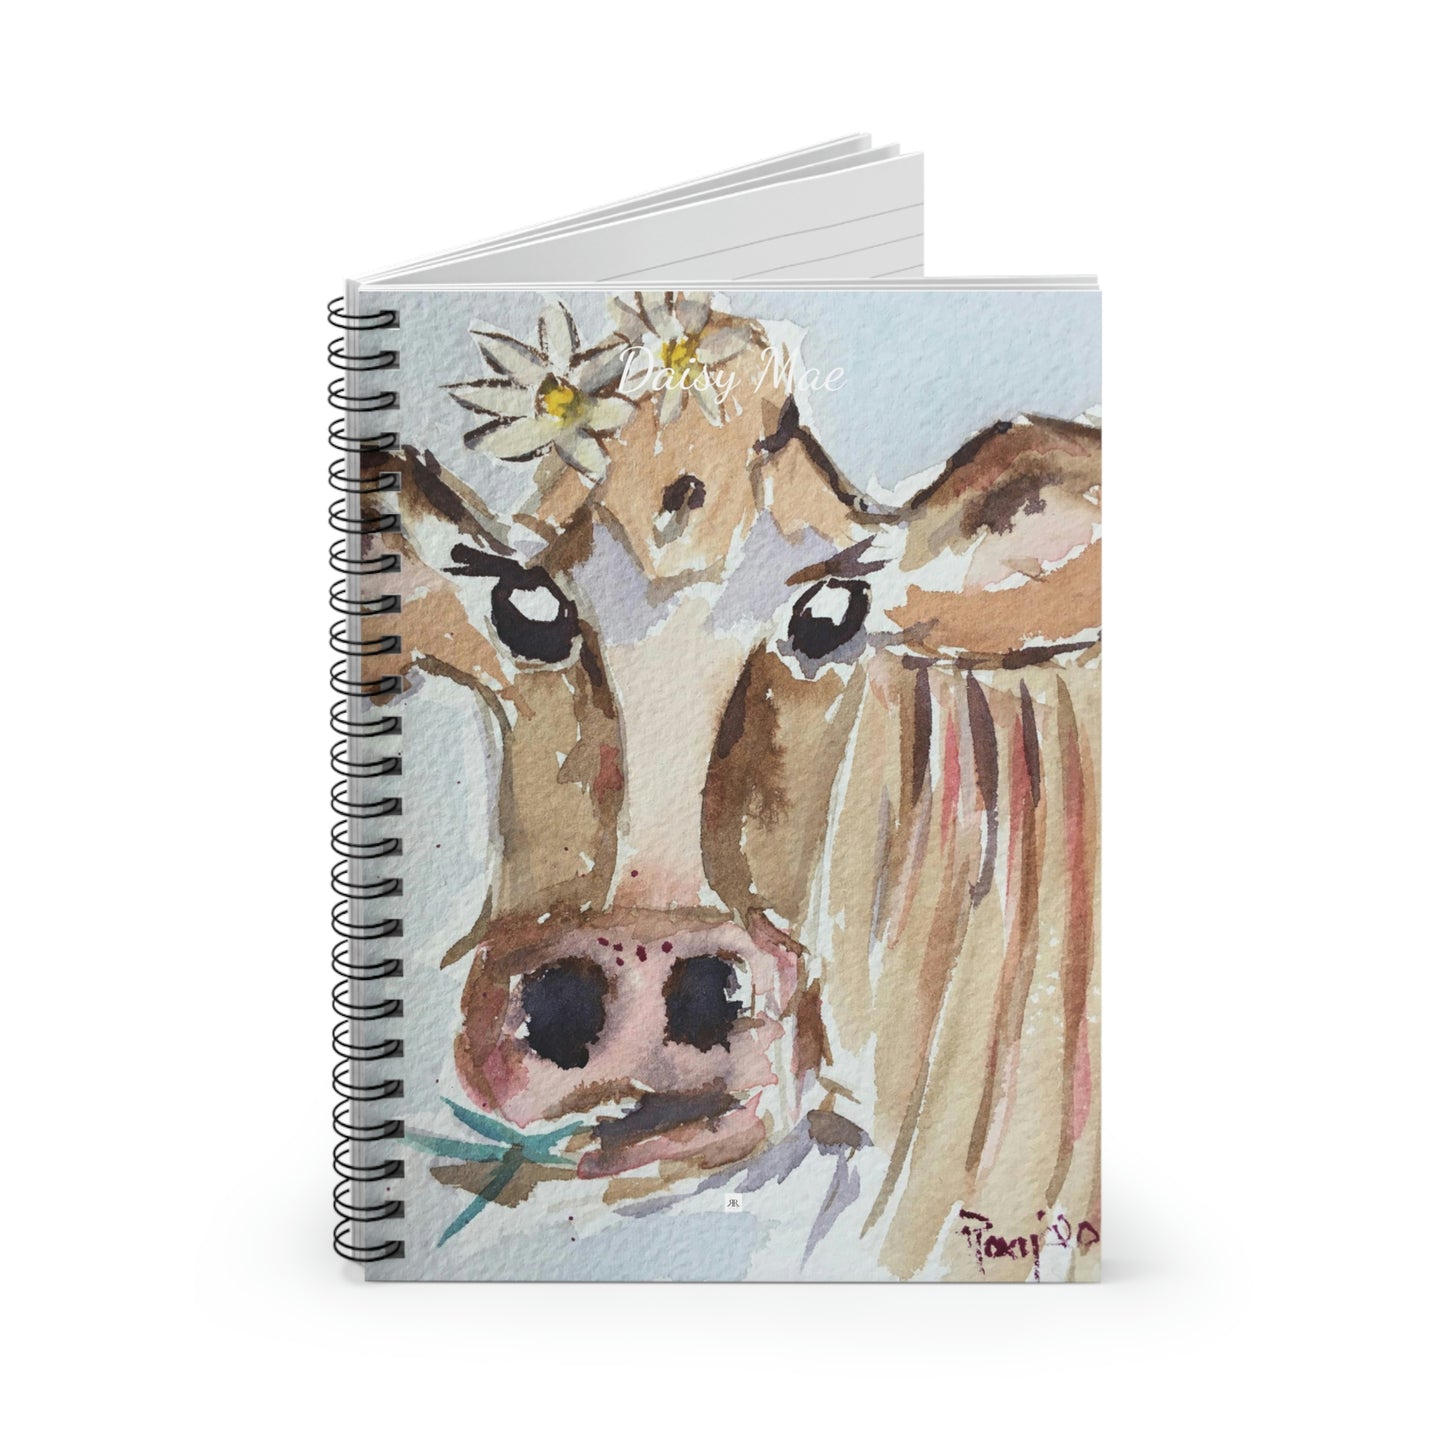 Daisy Mae - Peinture de vache fantaisiste Cahier à spirale